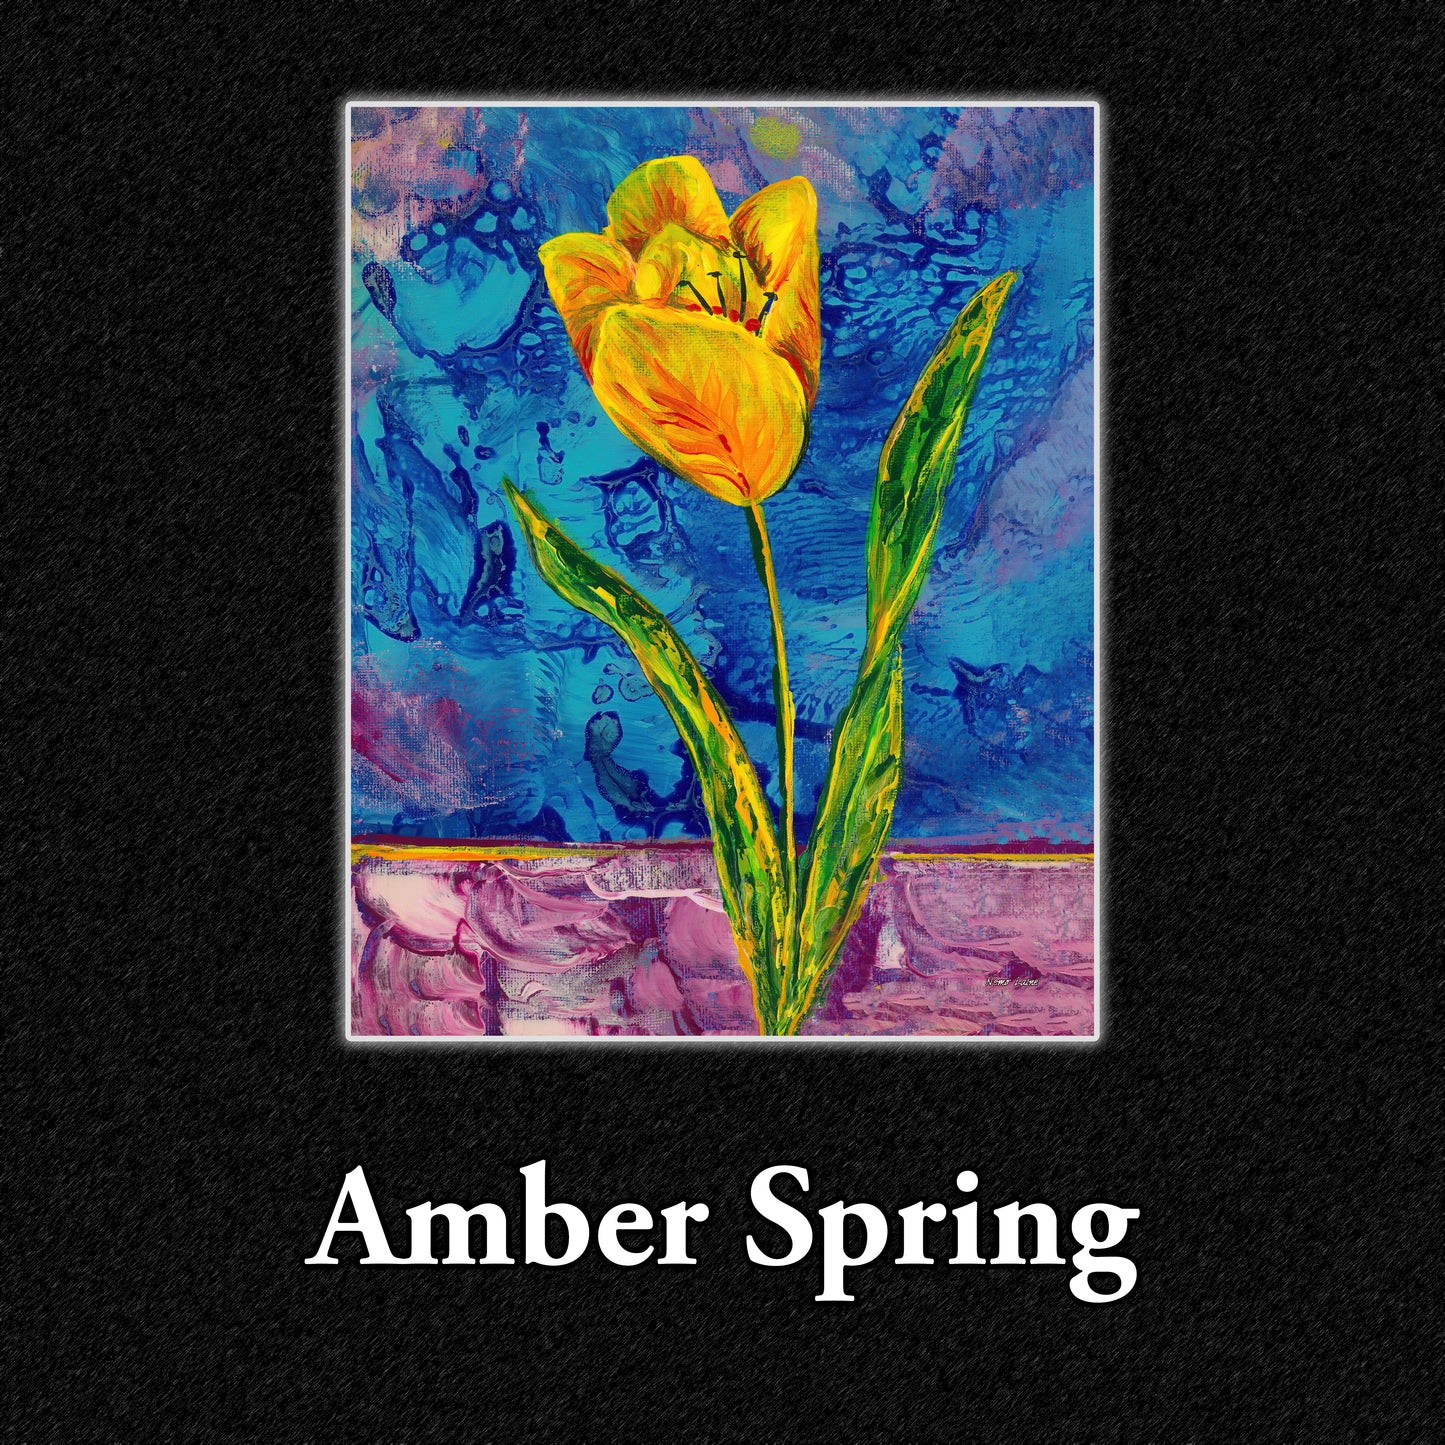 Amber Spring